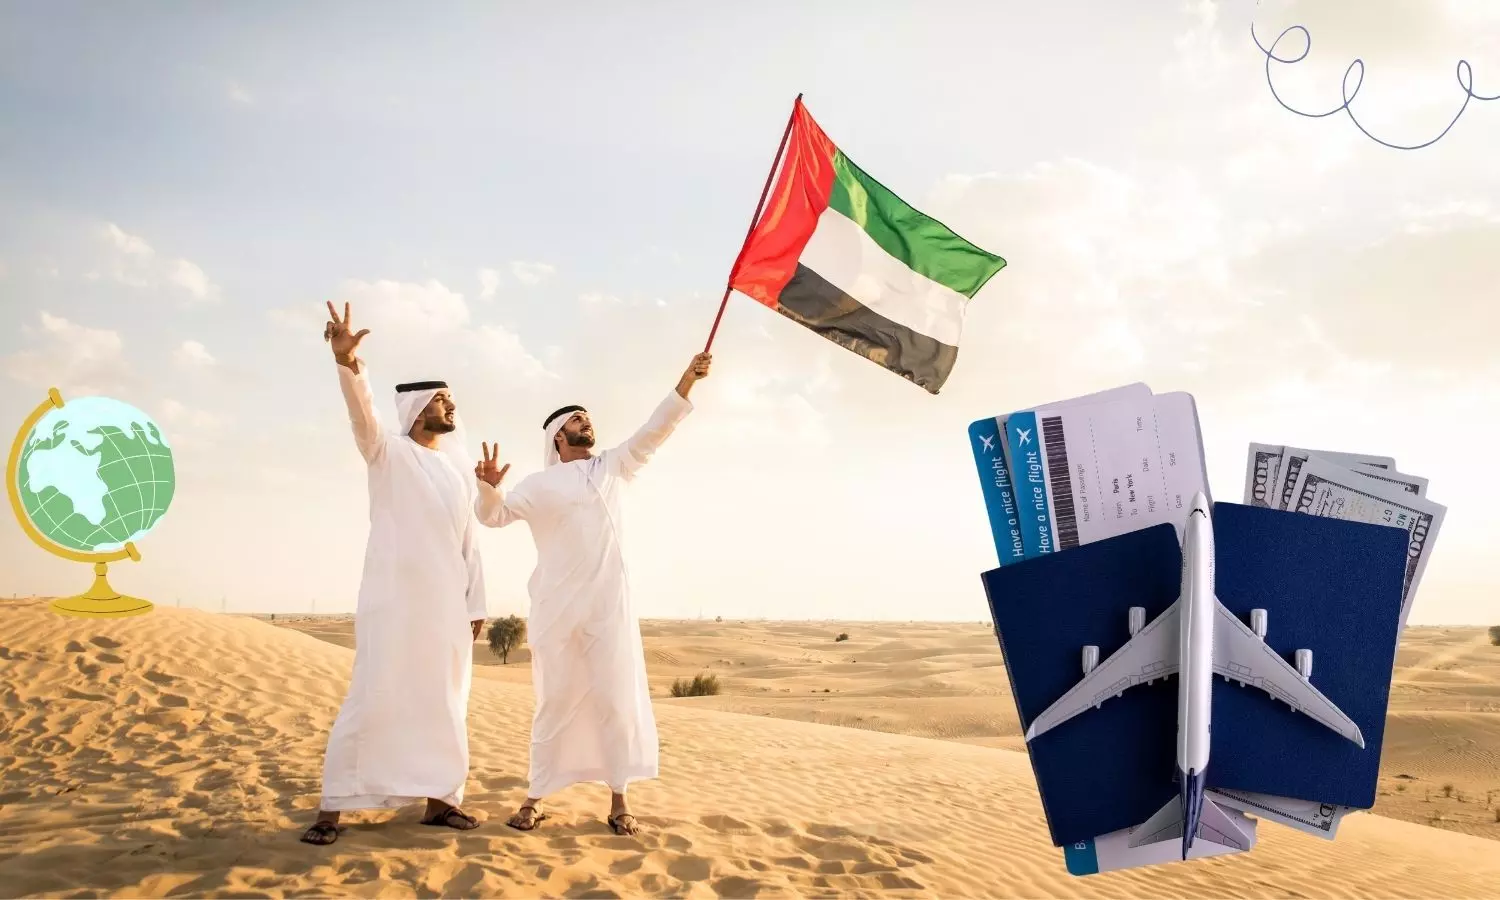 UAE men and UAE flag